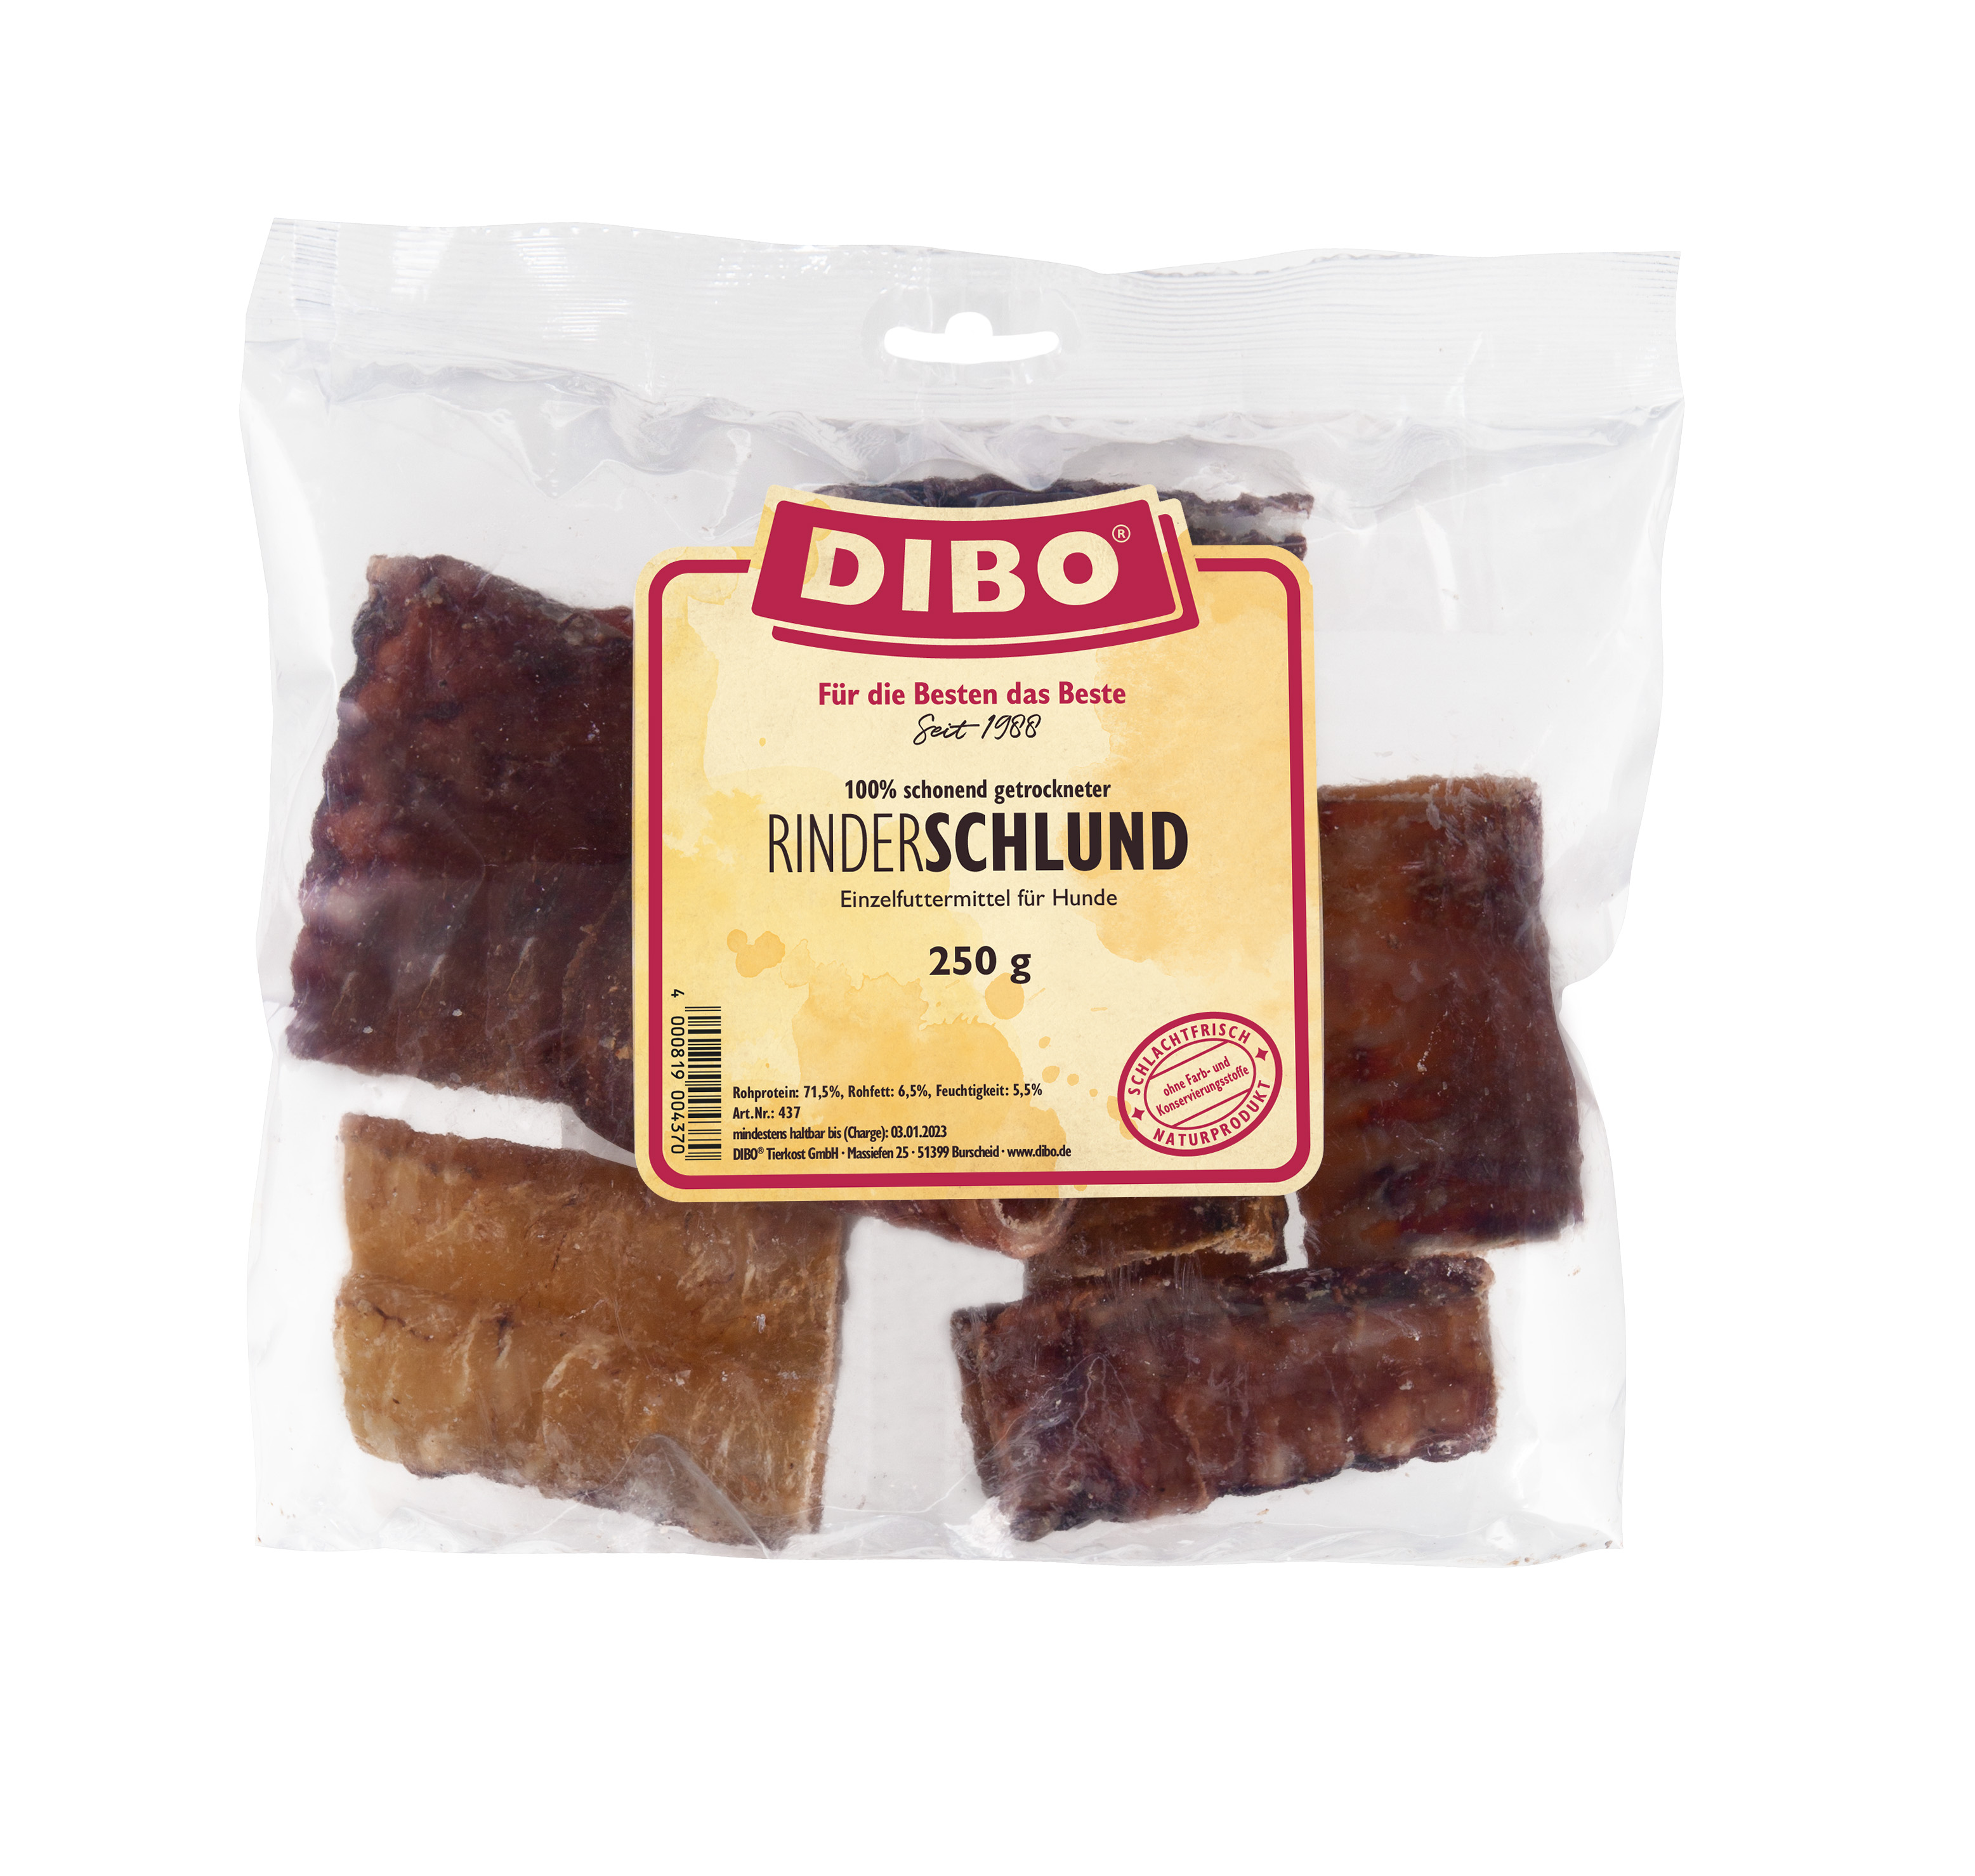 DIBO Rinderschlund (Strosse) geschnitten, 250g Beutel